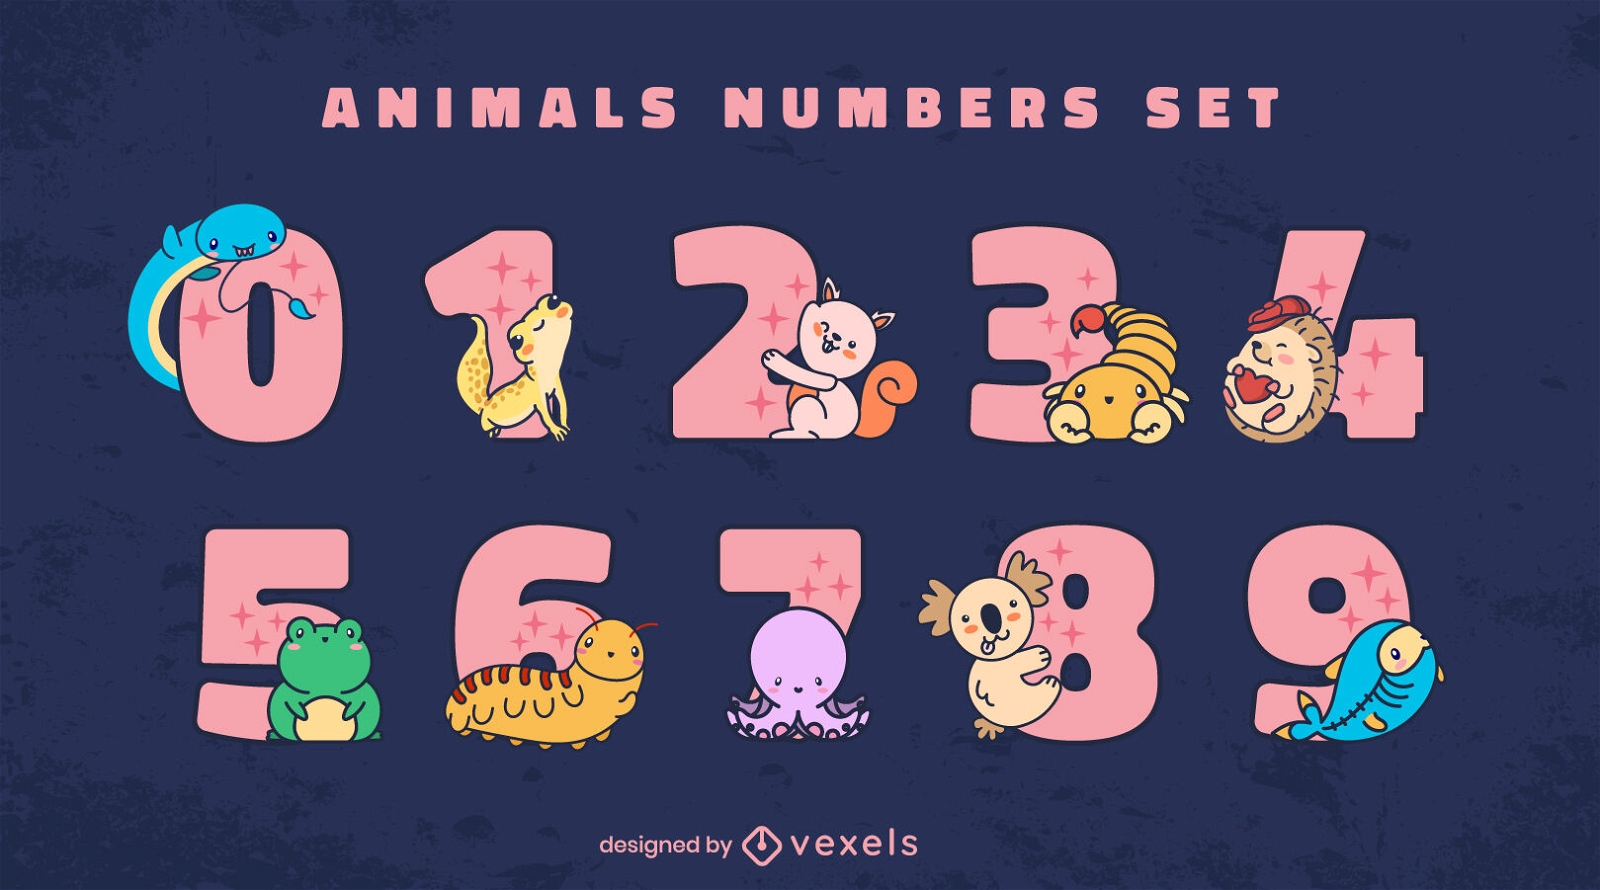 Cute animal numbers set